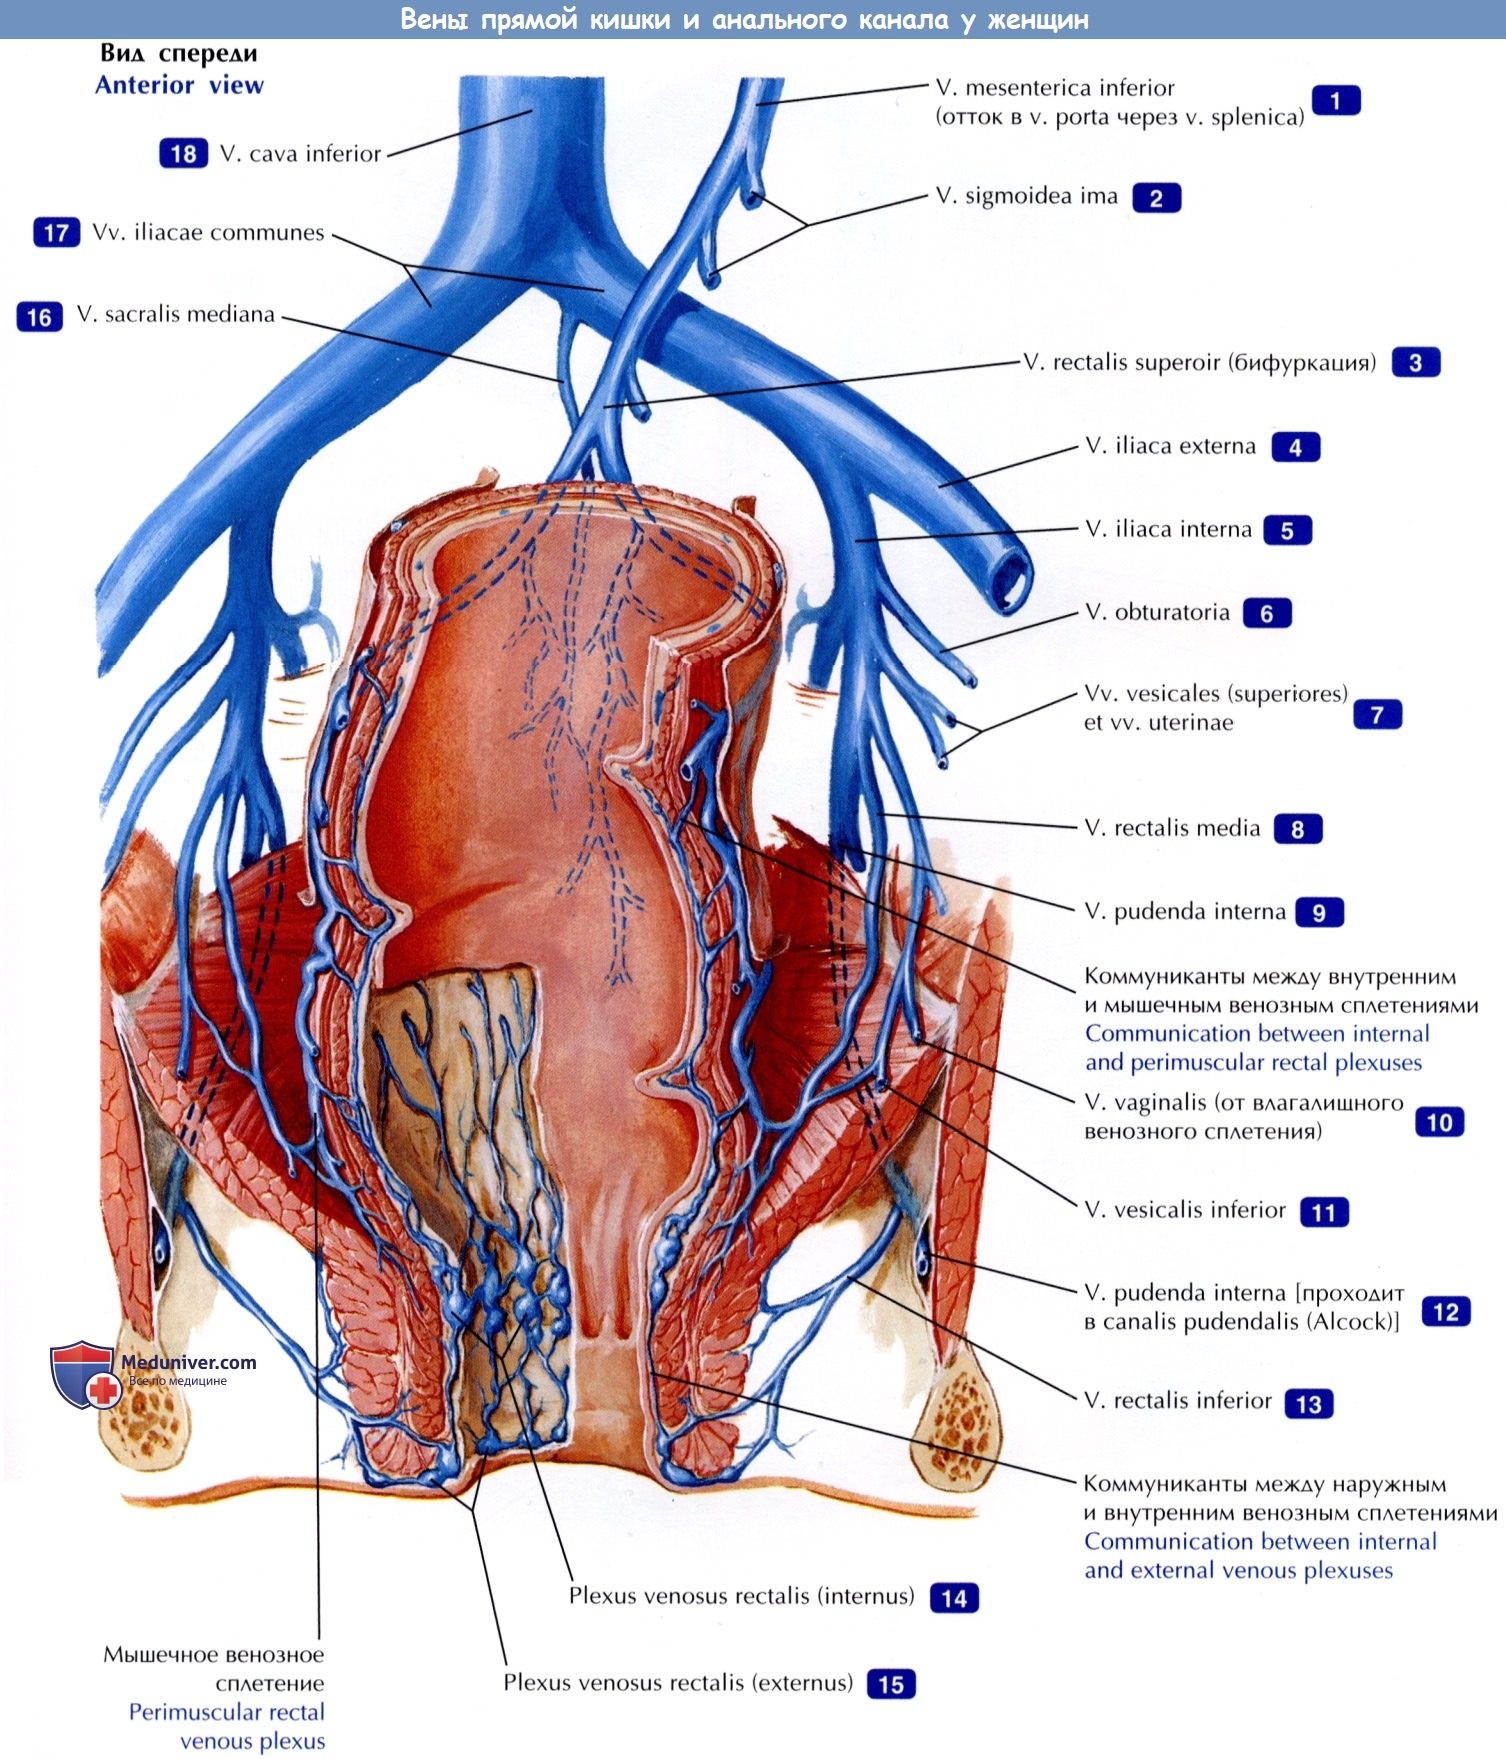 Вены прямой кишки и анального канала у женщин - по атласу анатомии